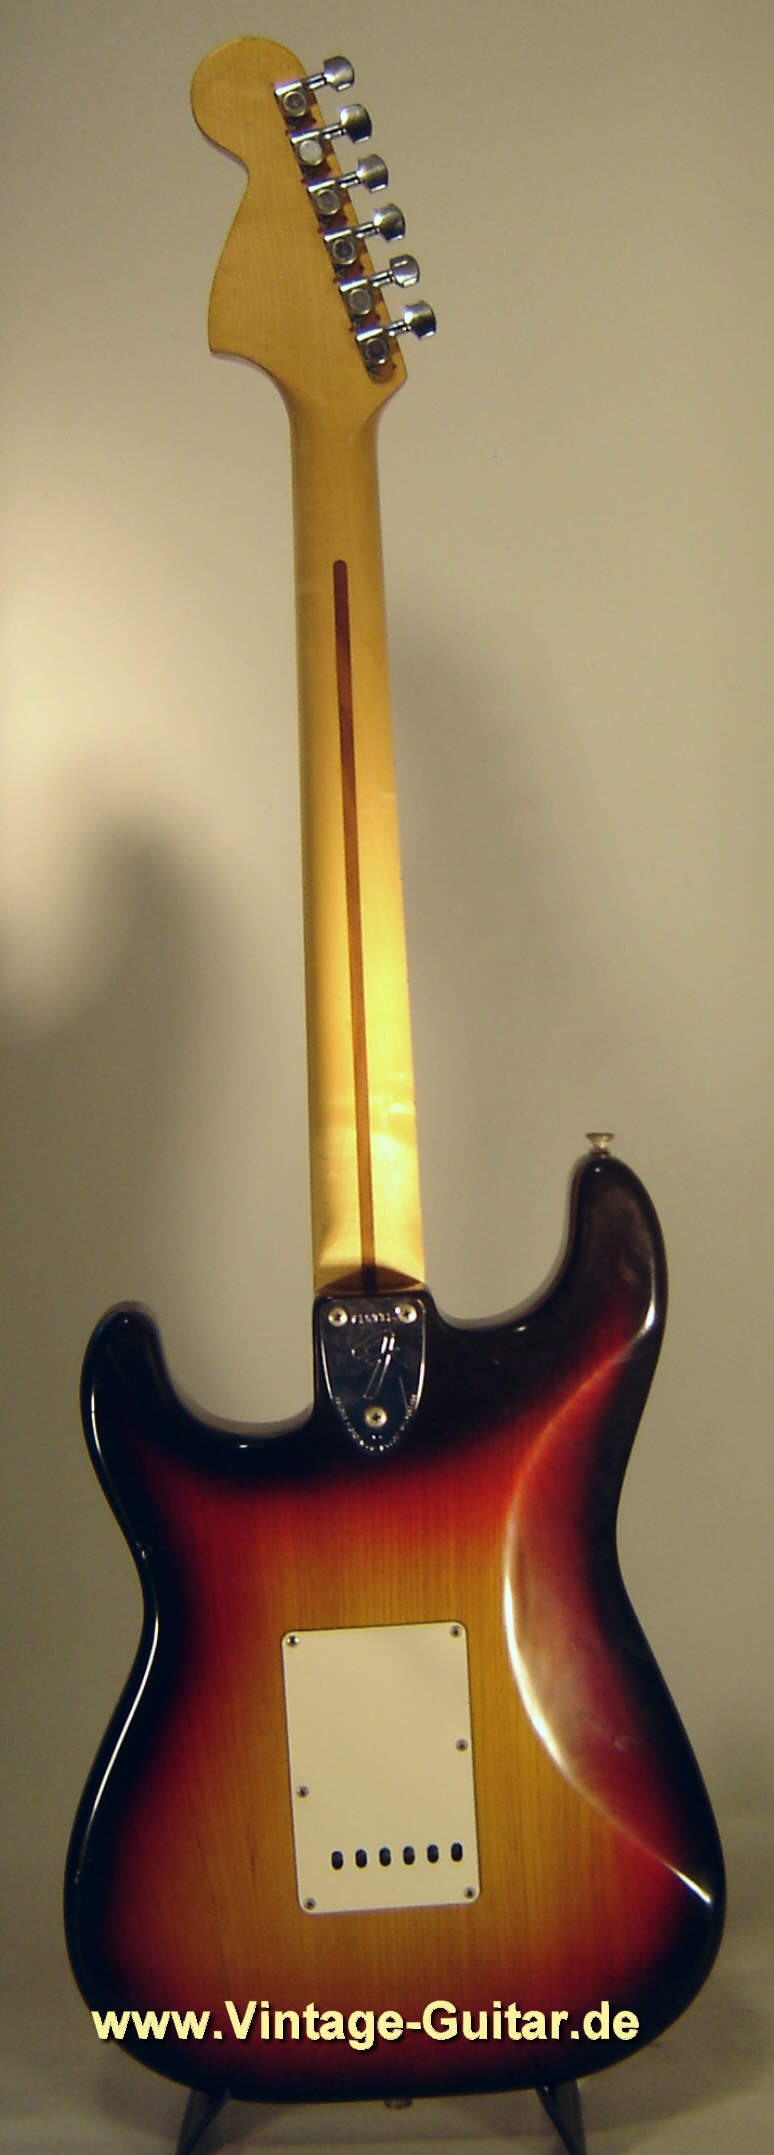 Fender-Stratocaster-1976-sunburst-black-white-2.jpg